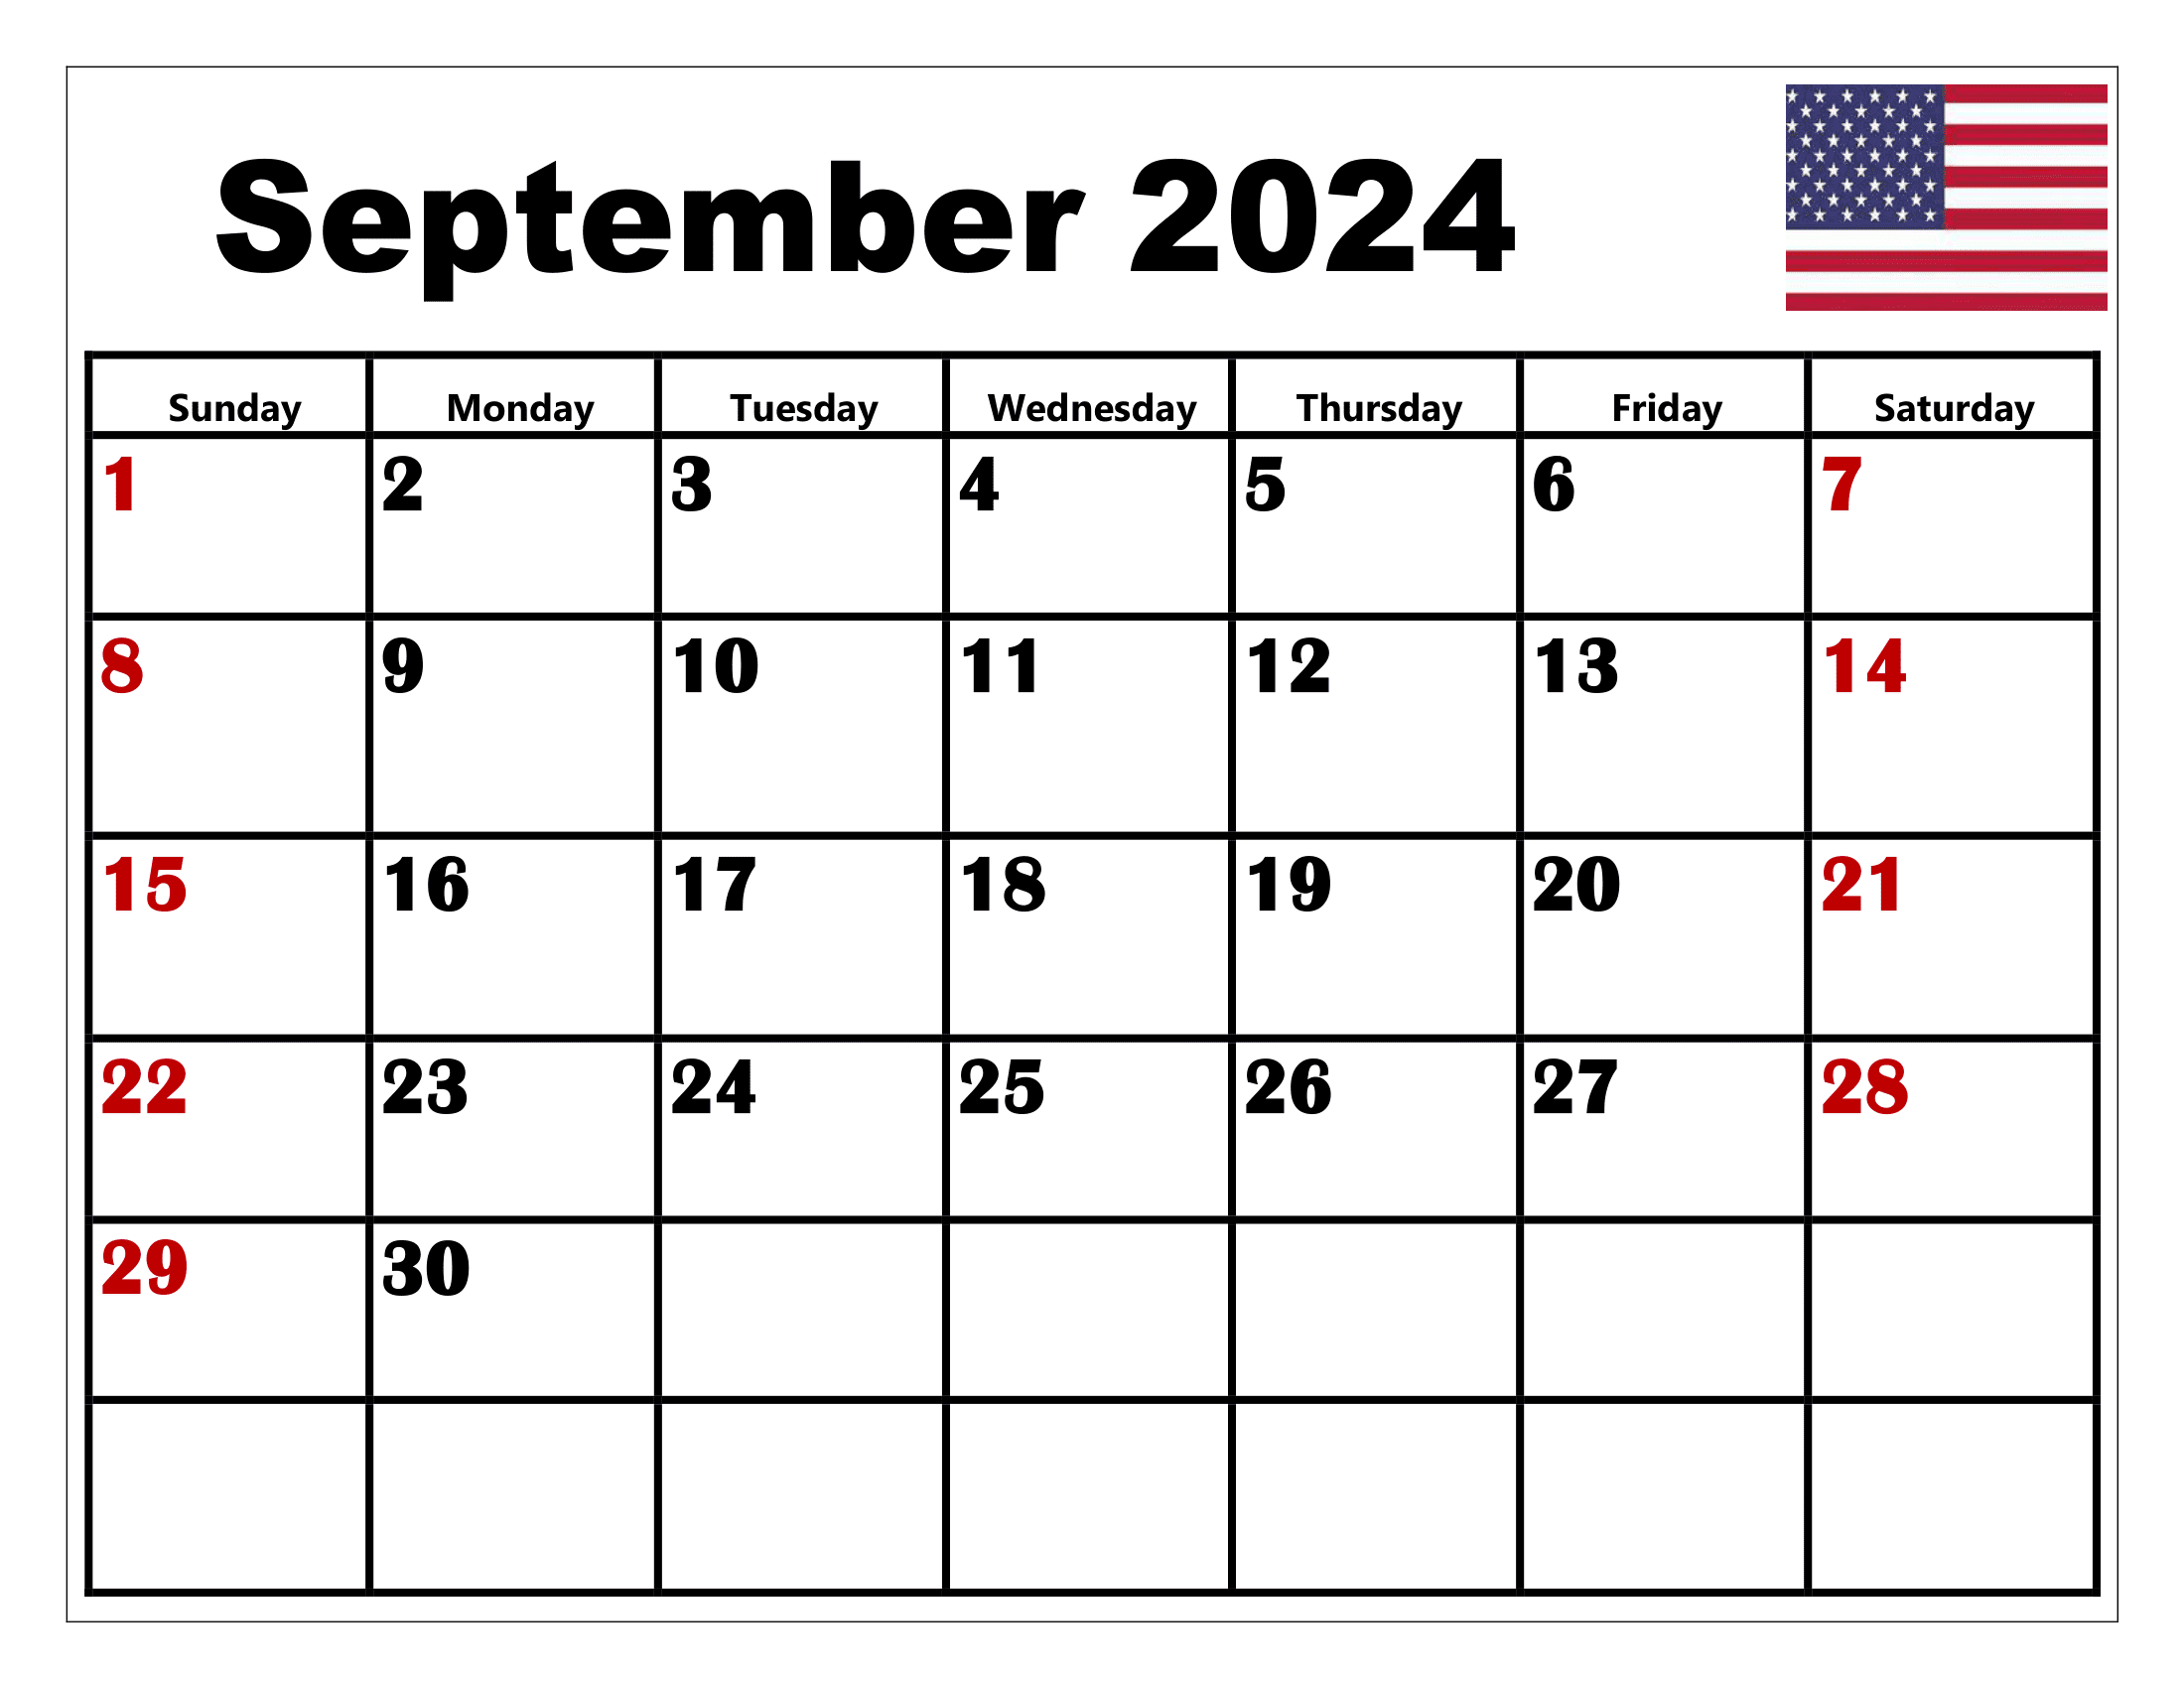 September 2024 Holiday Calendar Kiri Serene